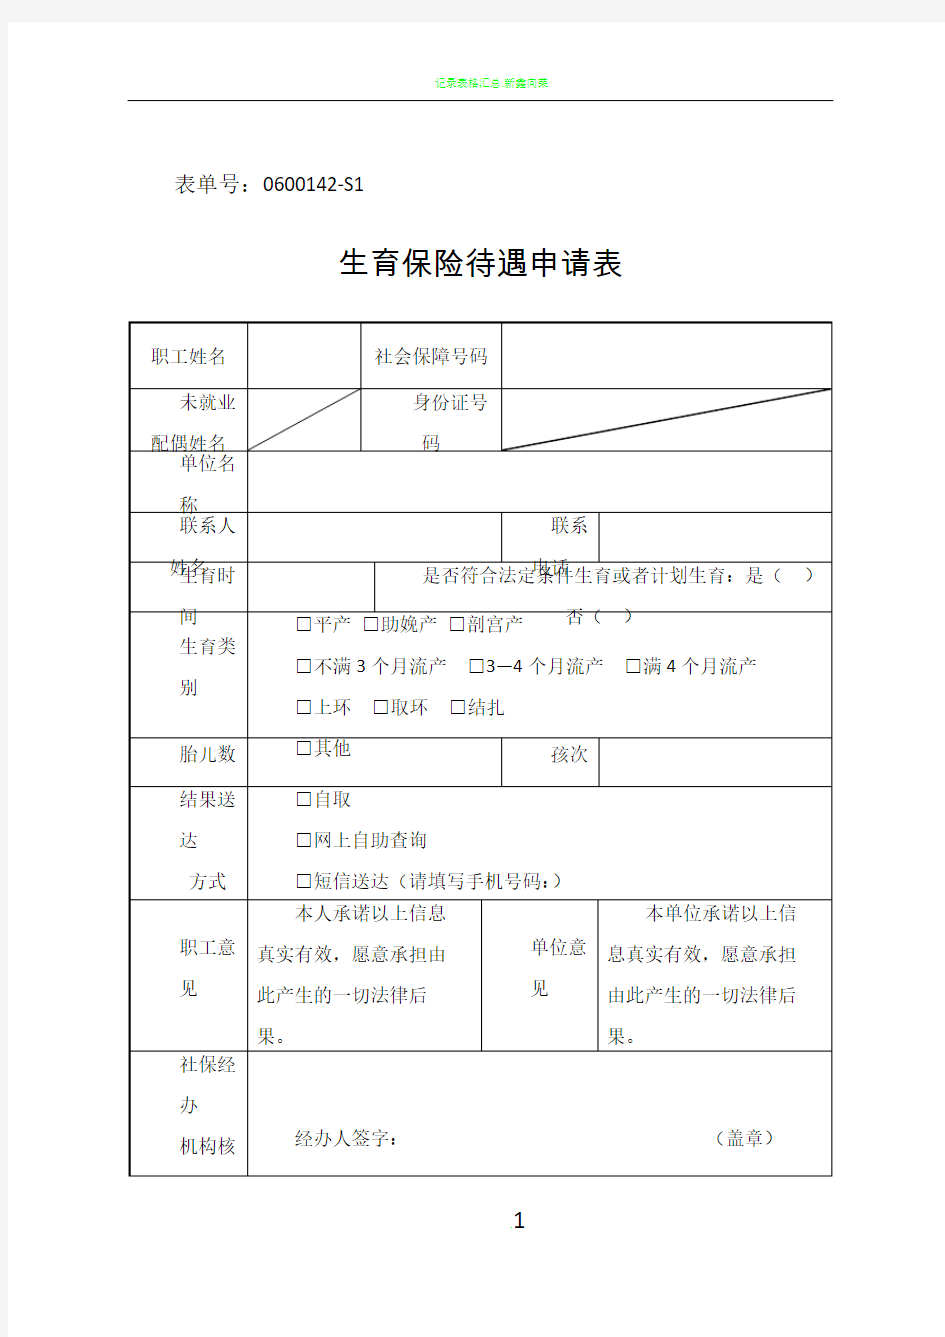 2019杭州市生育保险待遇申请表